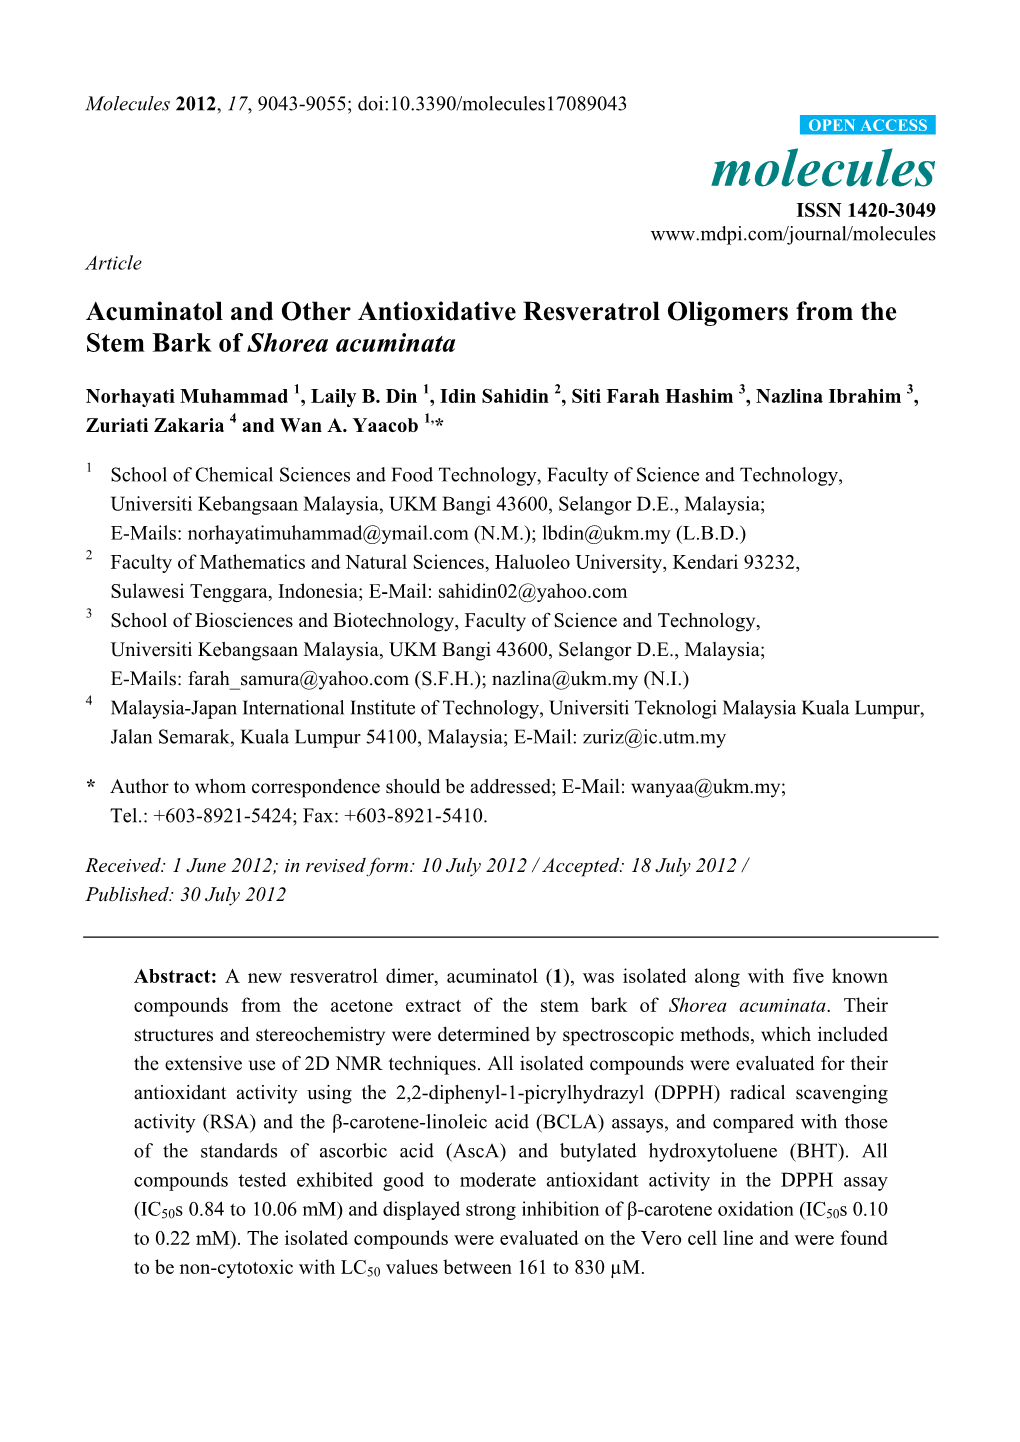 Acuminatol and Other Antioxidative Resveratrol Oligomers from the Stem Bark of Shorea Acuminata